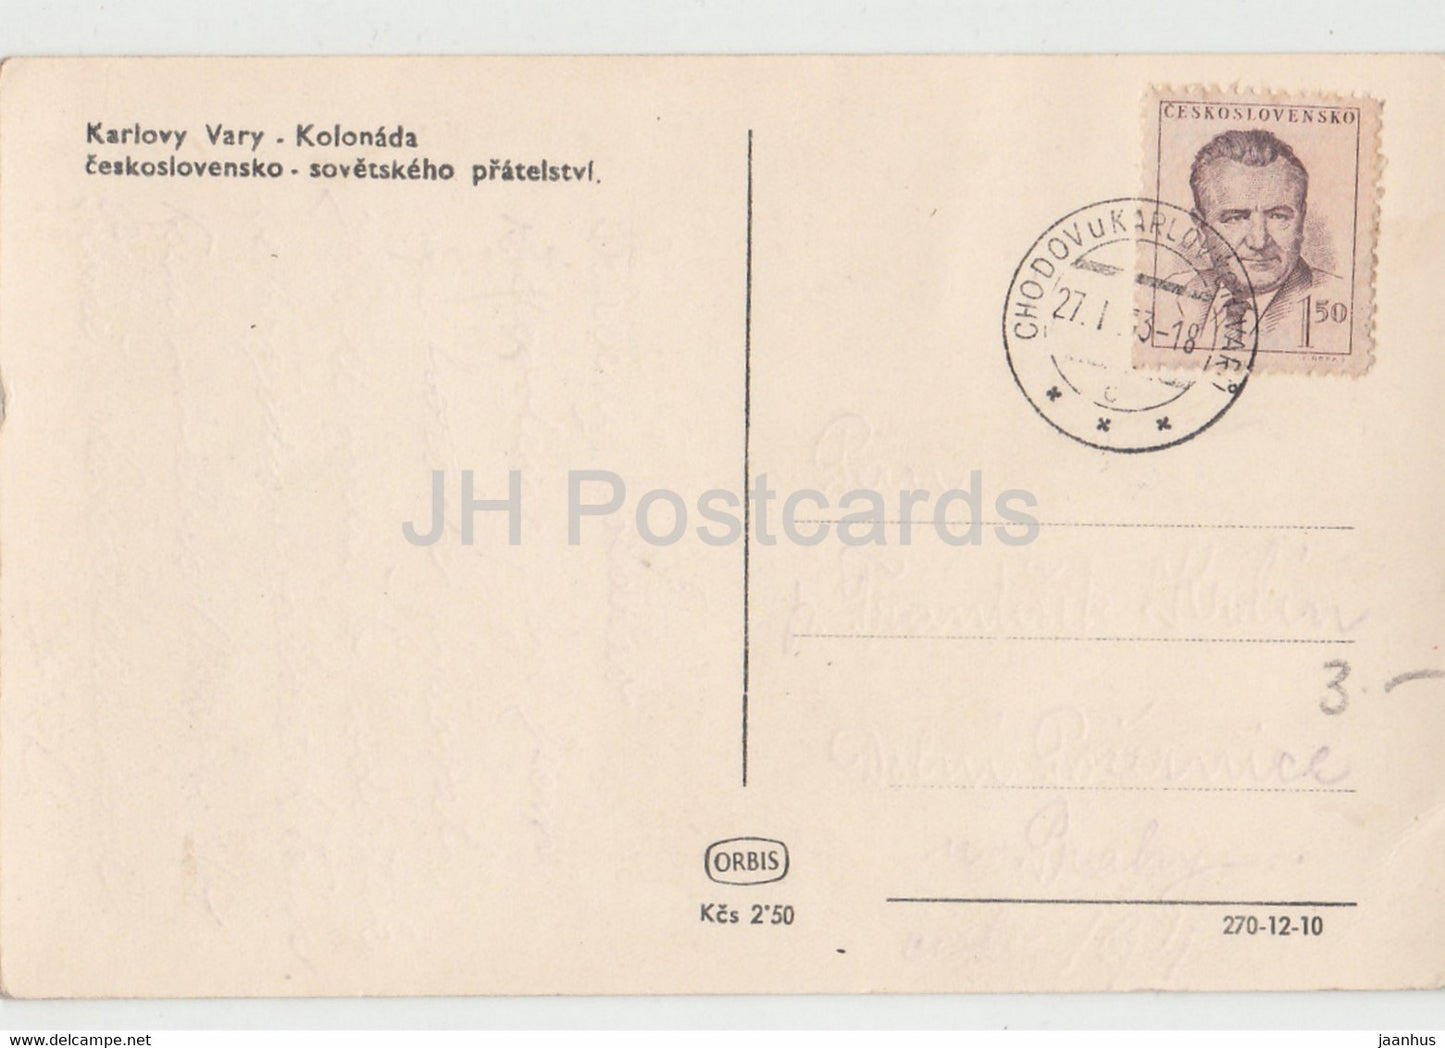 Karlovy Vary - Karlsbad - kolonada - Colonnade - carte postale ancienne - Tchécoslovaquie - République tchèque - utilisé